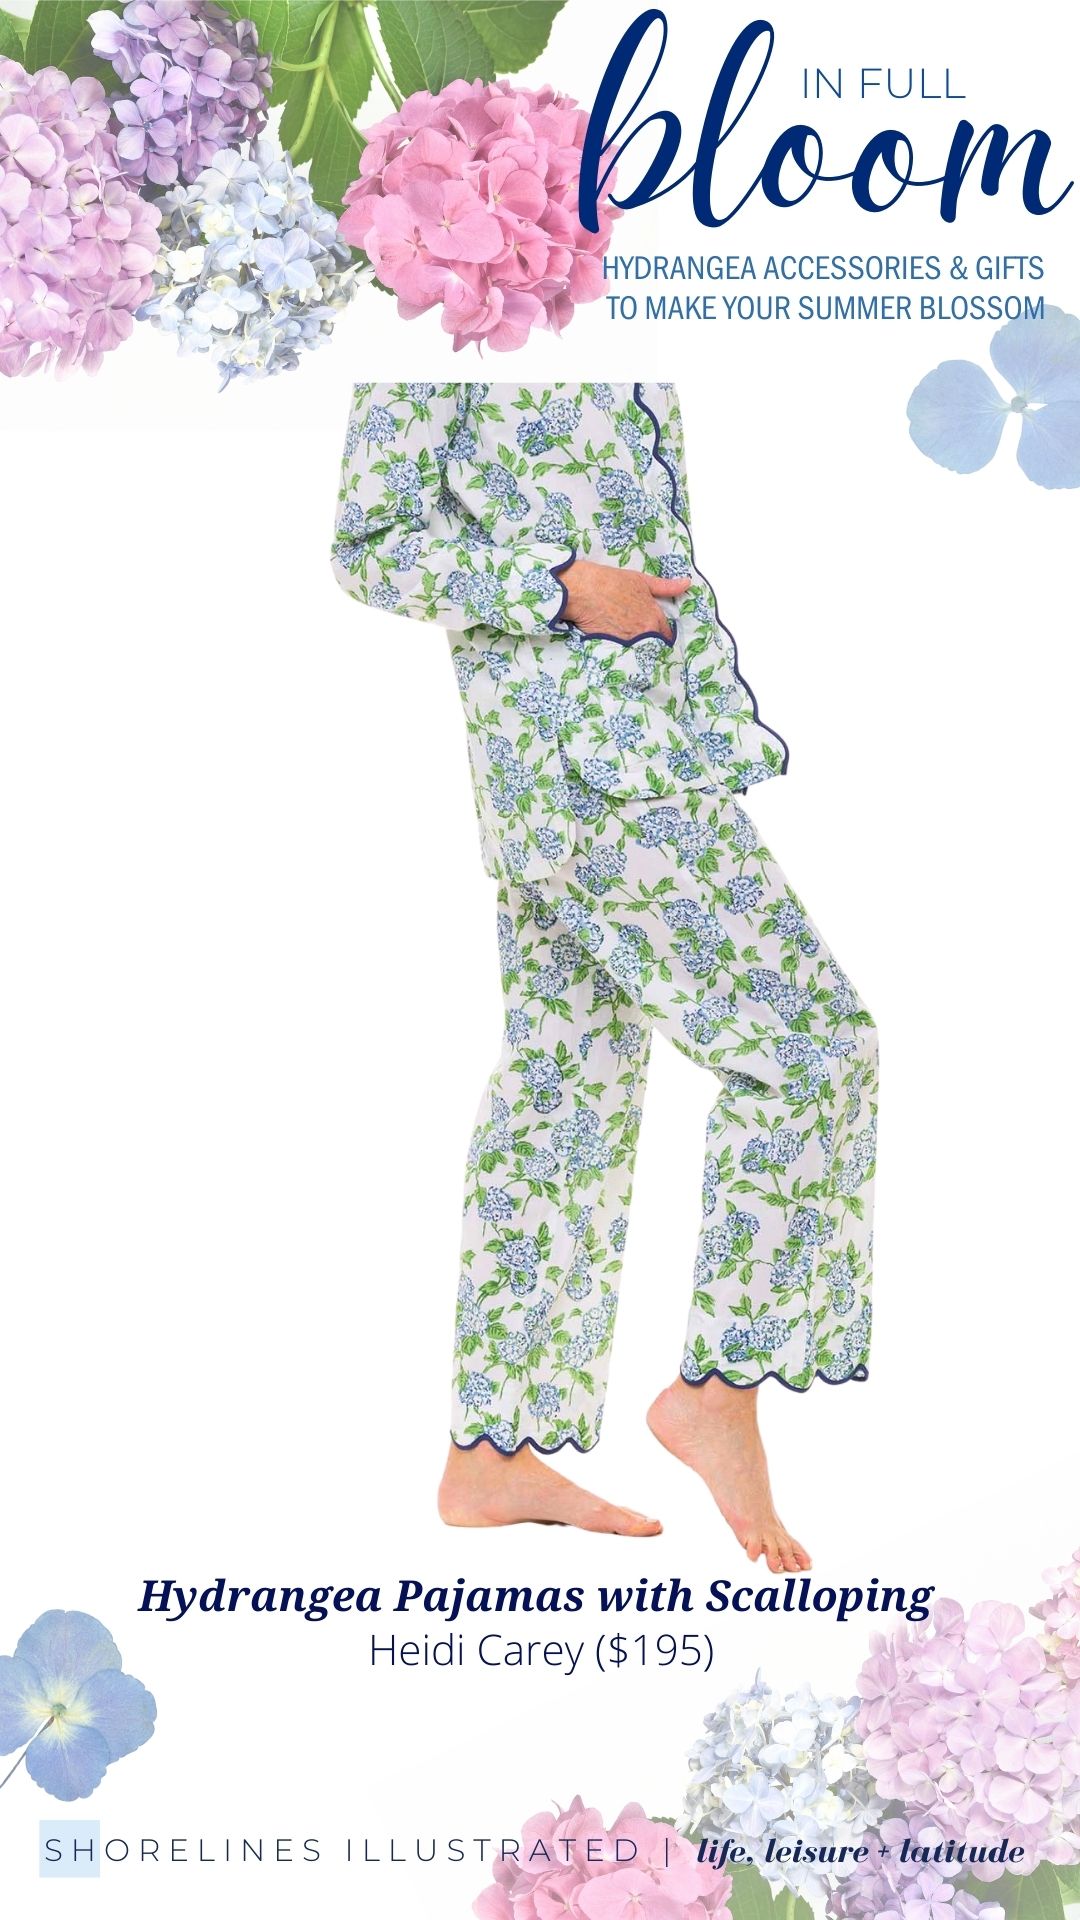 Heidi Carey Hydrangea Pajamas